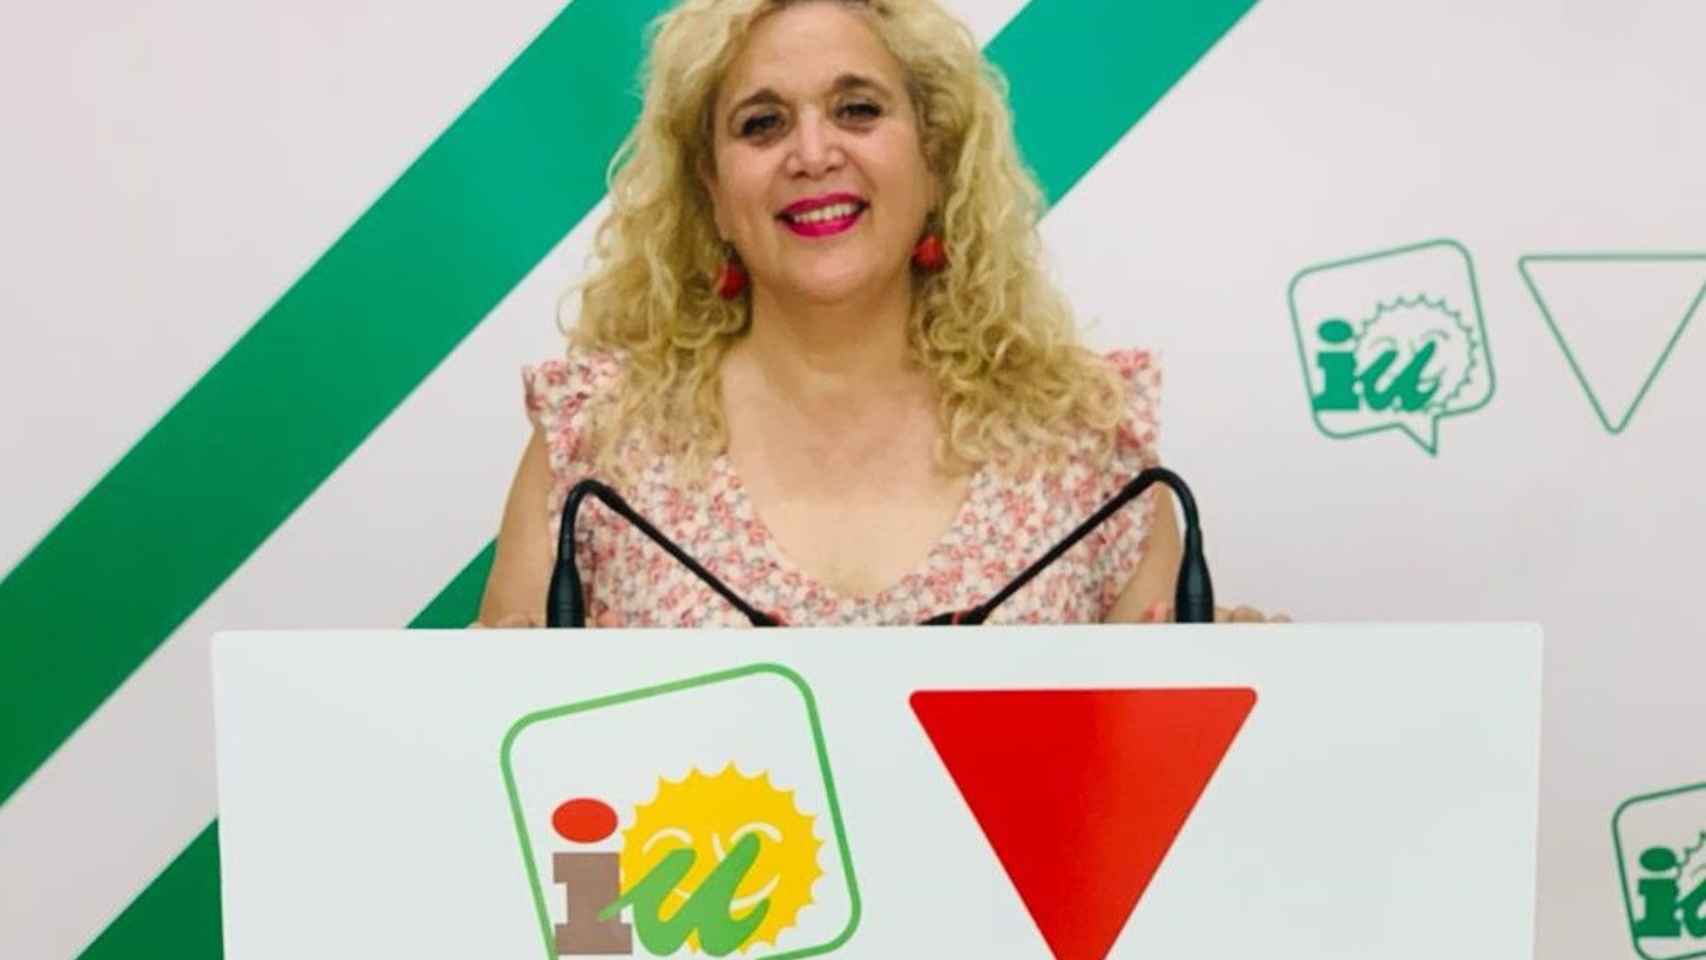 Remedios Ramos, concejala de IU en el Ayuntamiento de Málaga, en una imagen.